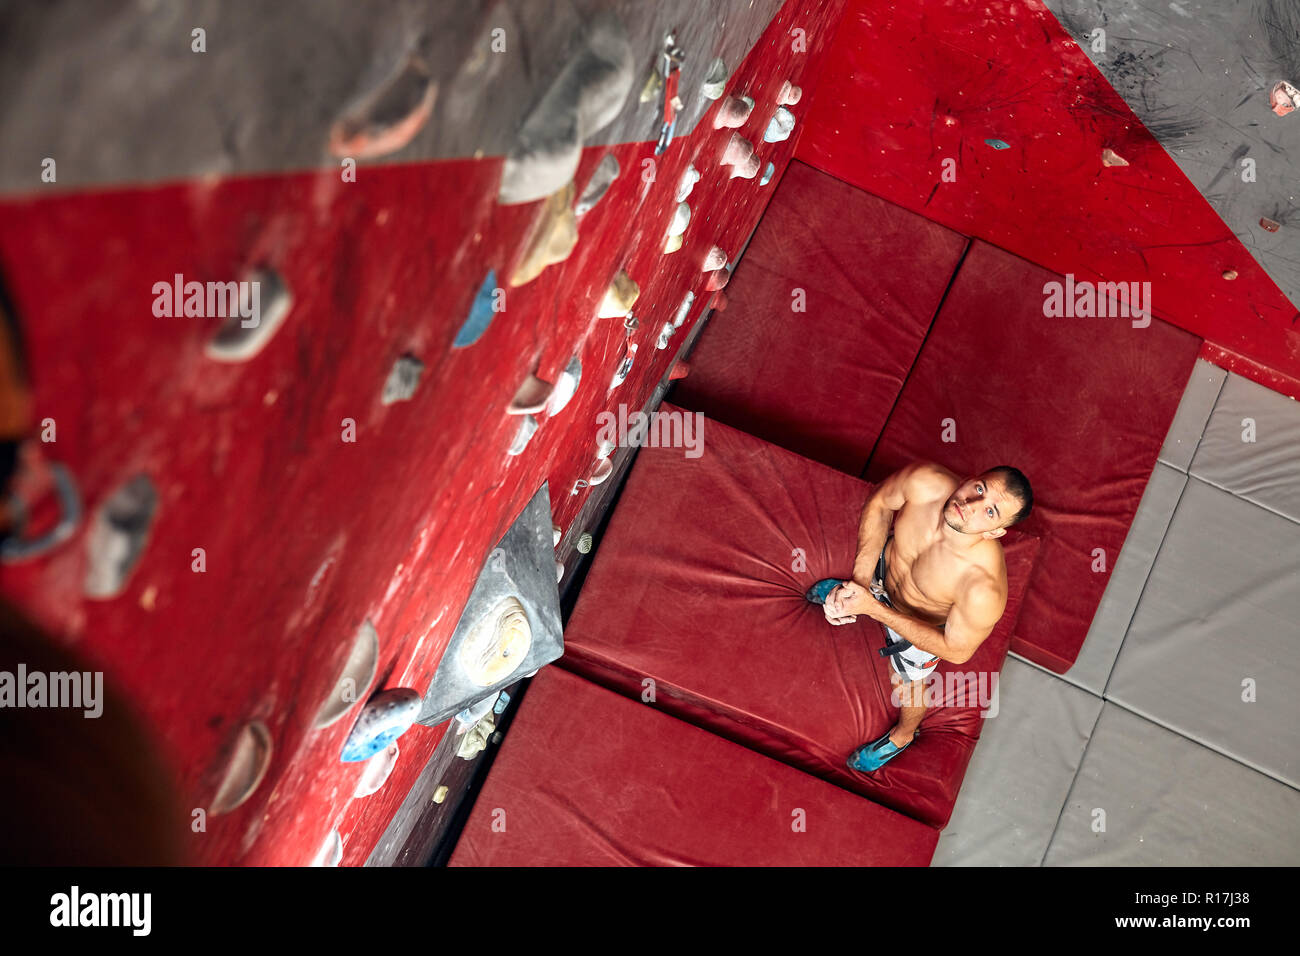 Panoramic man bouldering at an indoor climbing centre. Stock Photo